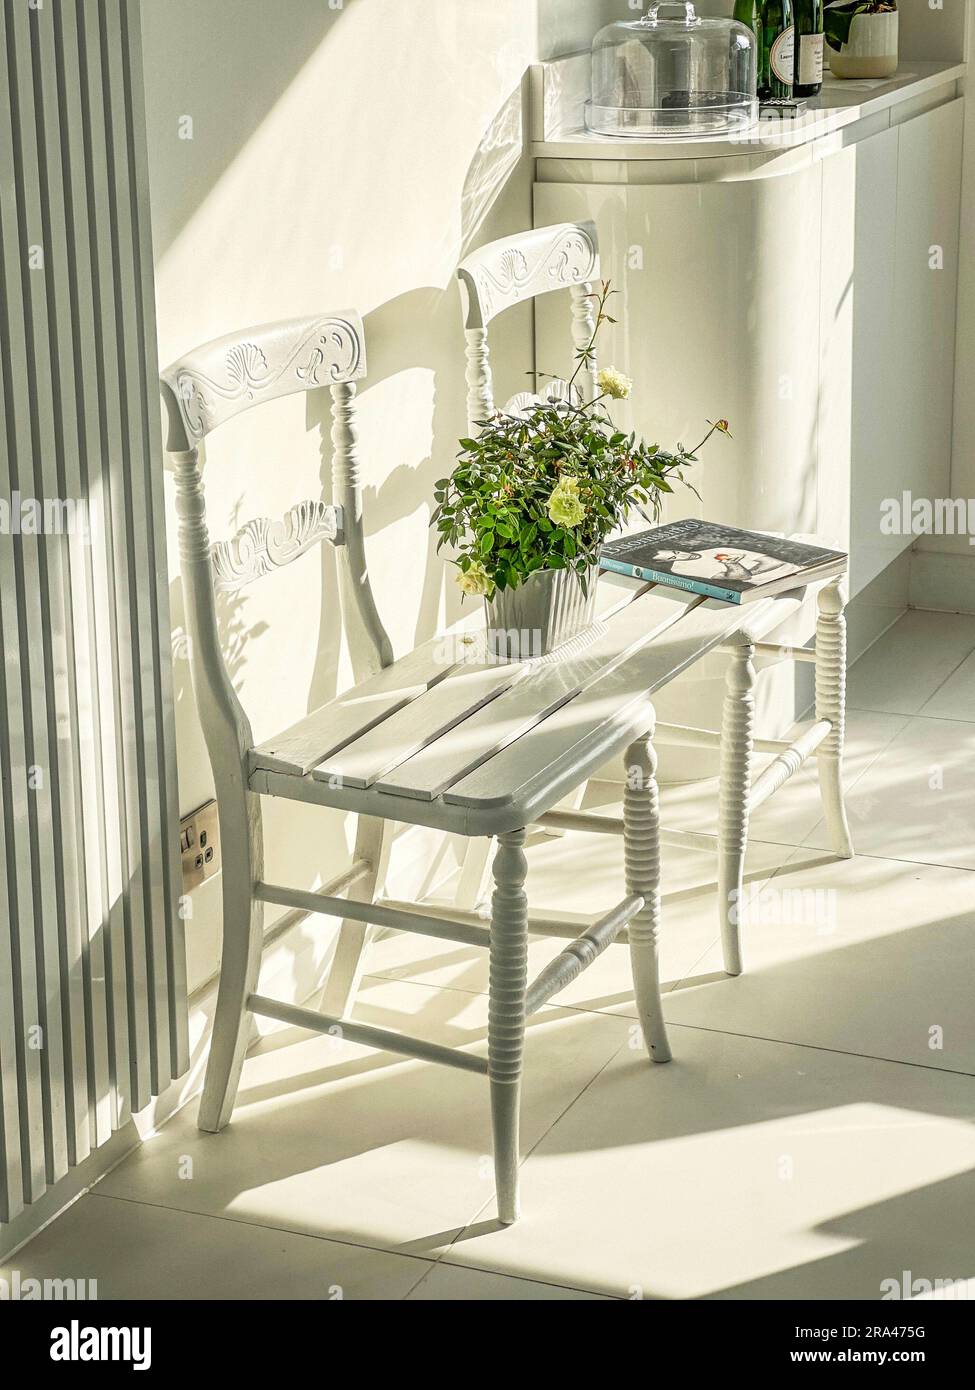 Eine Sitzbank, die durch die Verbindung von zwei Stühlen in einer modernen, modernen weißen Küche hergestellt wird. (Ich habe keine Freigabe für das Buch auf dem Bild) Stockfoto